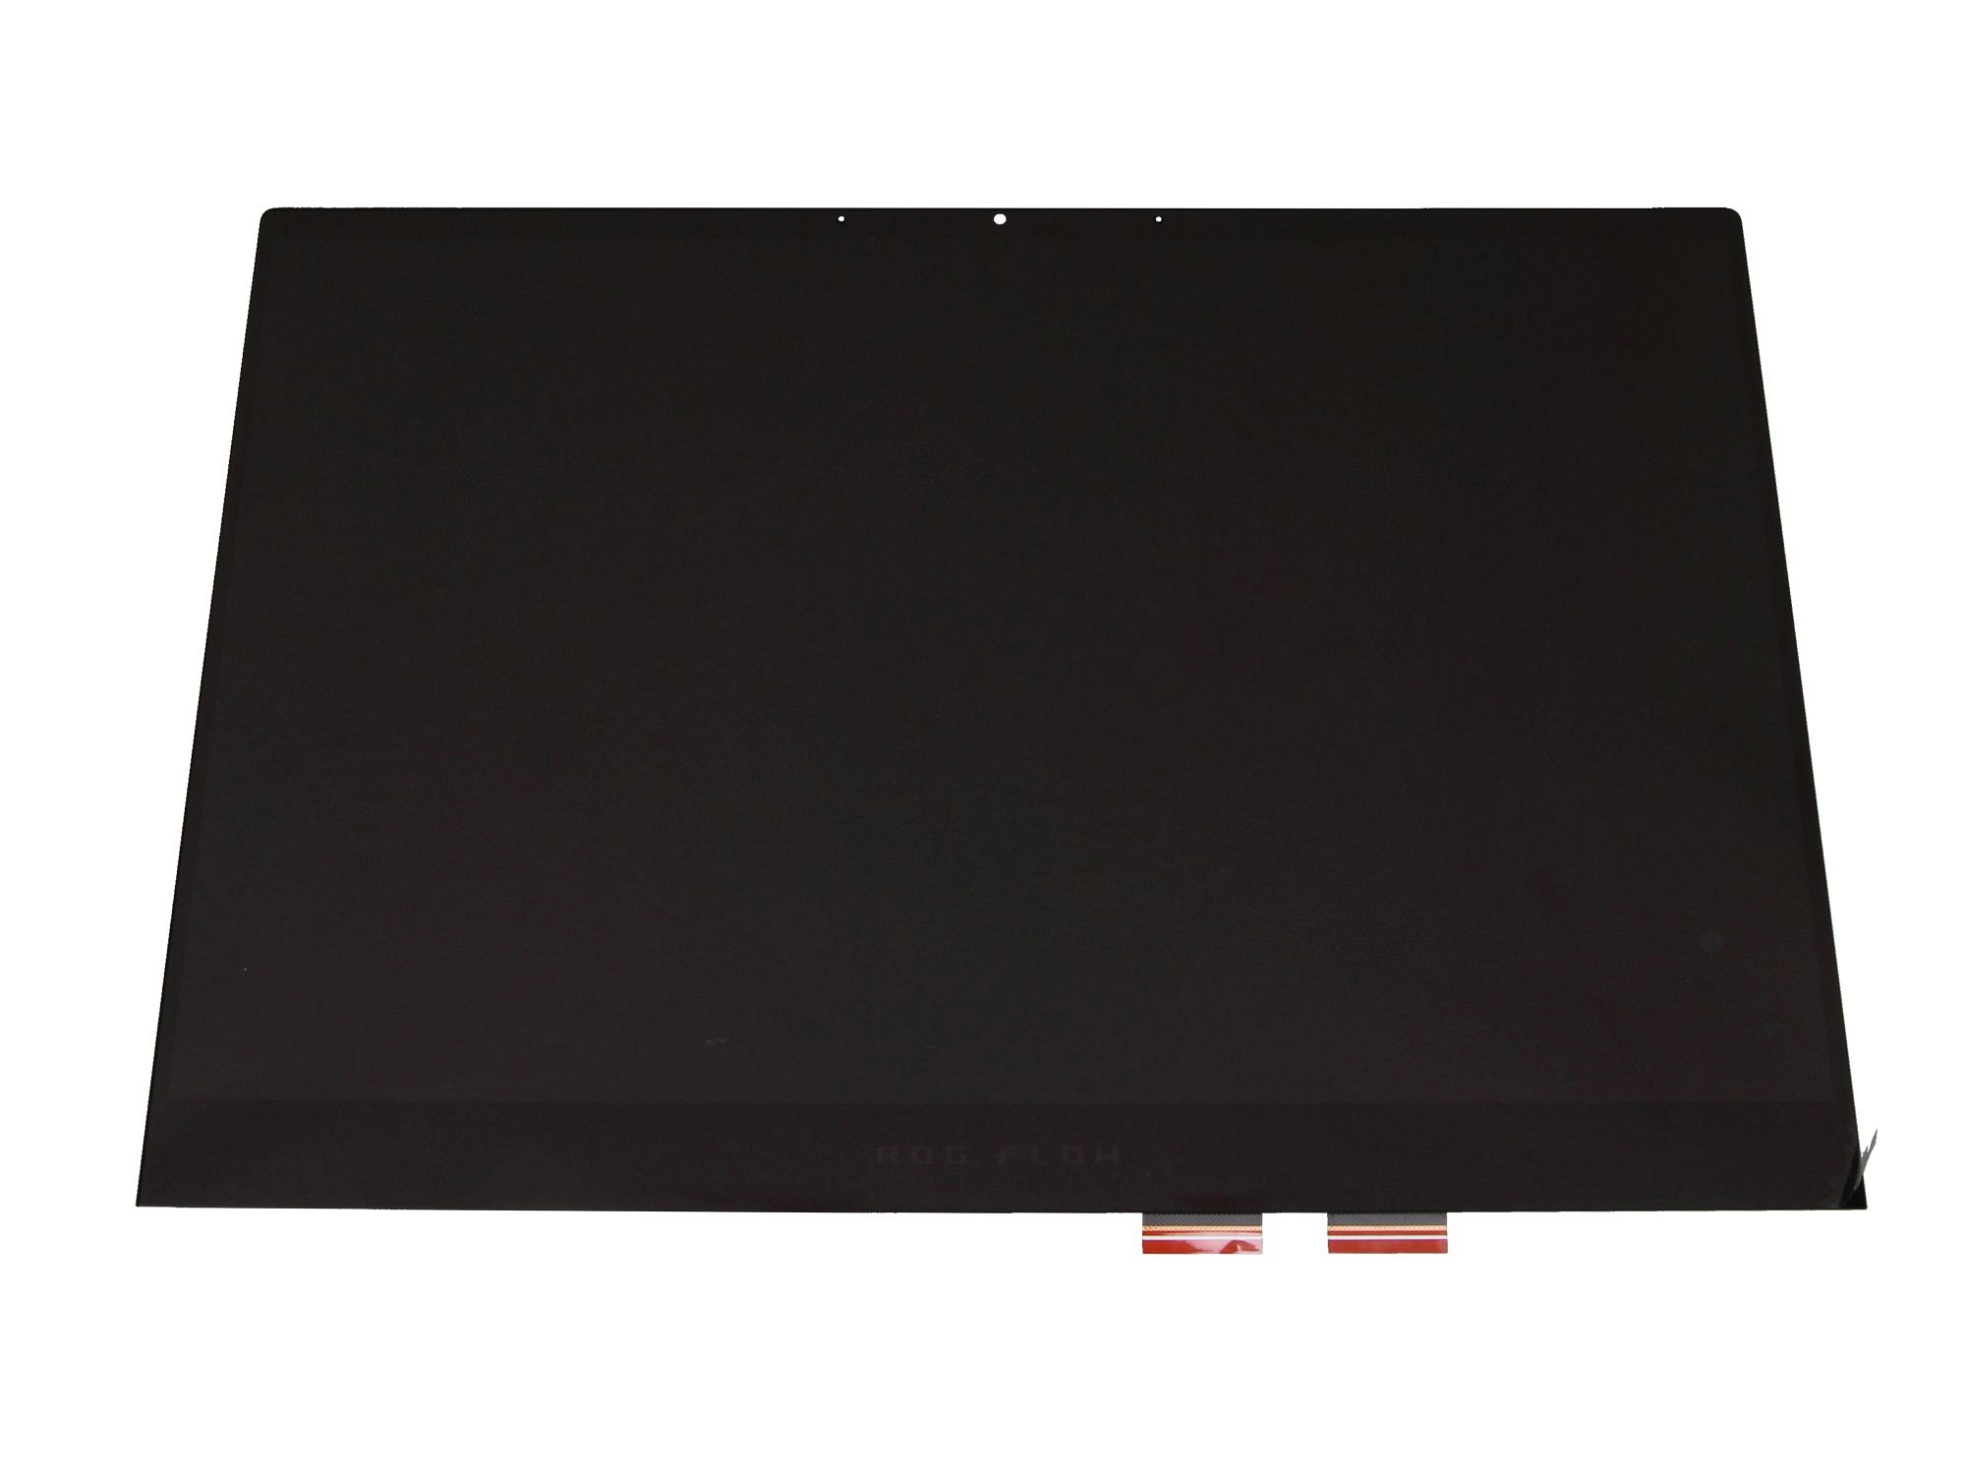 Asus 18100-13400300 Touch-Displayeinheit 13,4 Zoll (WUXGA 1920x1200) schwarz (120 Hz)